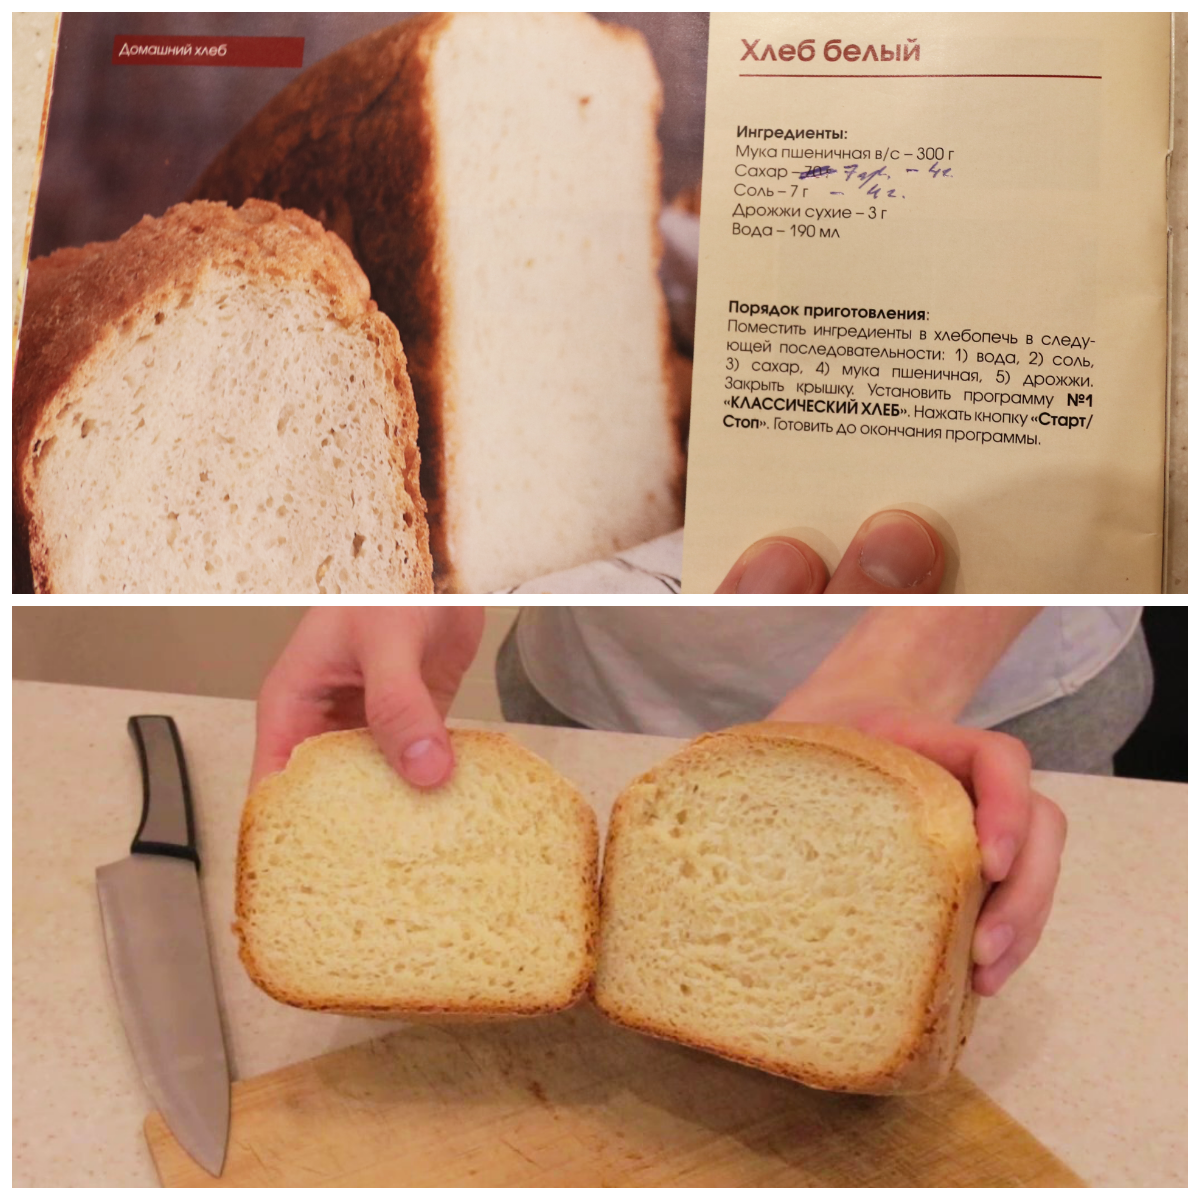 Хлеб в хлебопечке. Рецепт хлеба. Хлеб из хлебопечки. Рецепт хлеба в хлебопечке. Пошаговый рецепт хлеба в хлебопечке